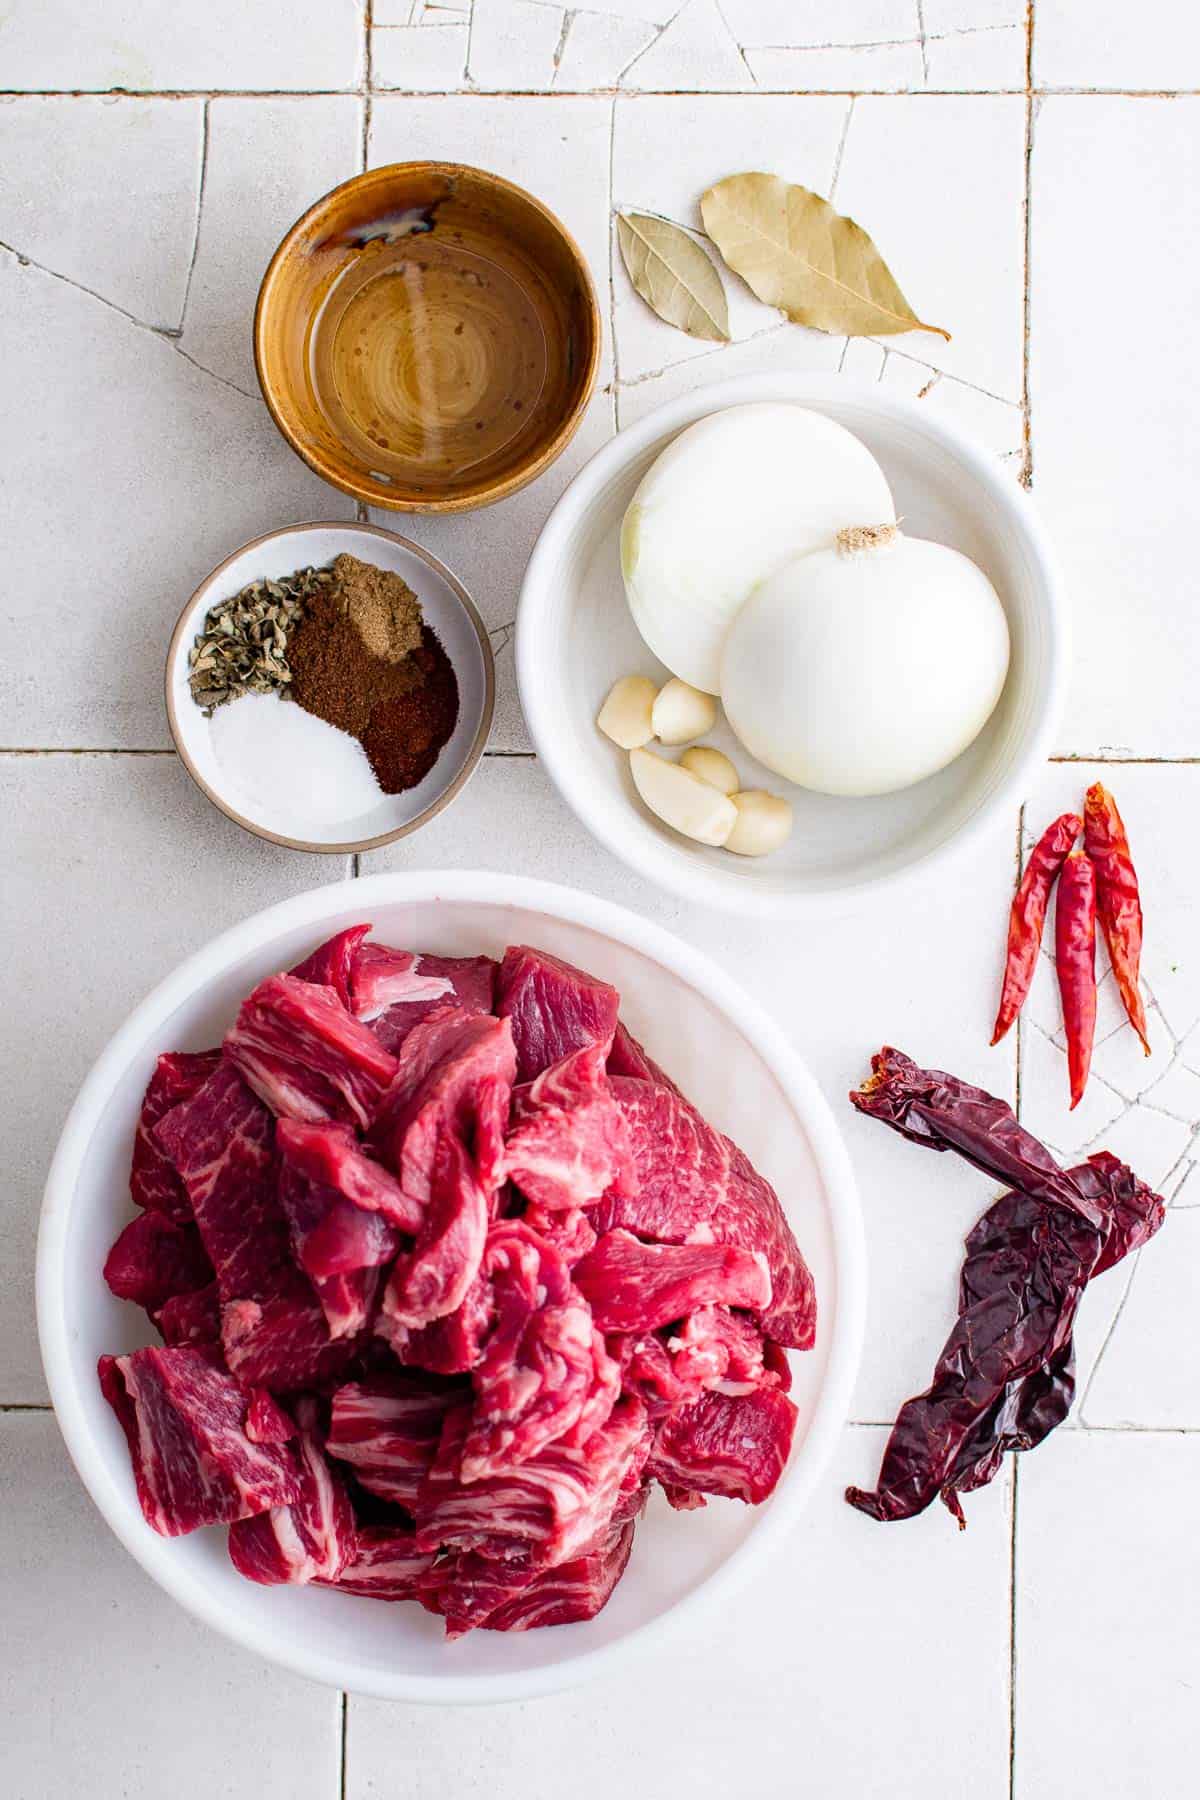 ingredients to make birria - chuck roast peppers, onions, seasoning, water